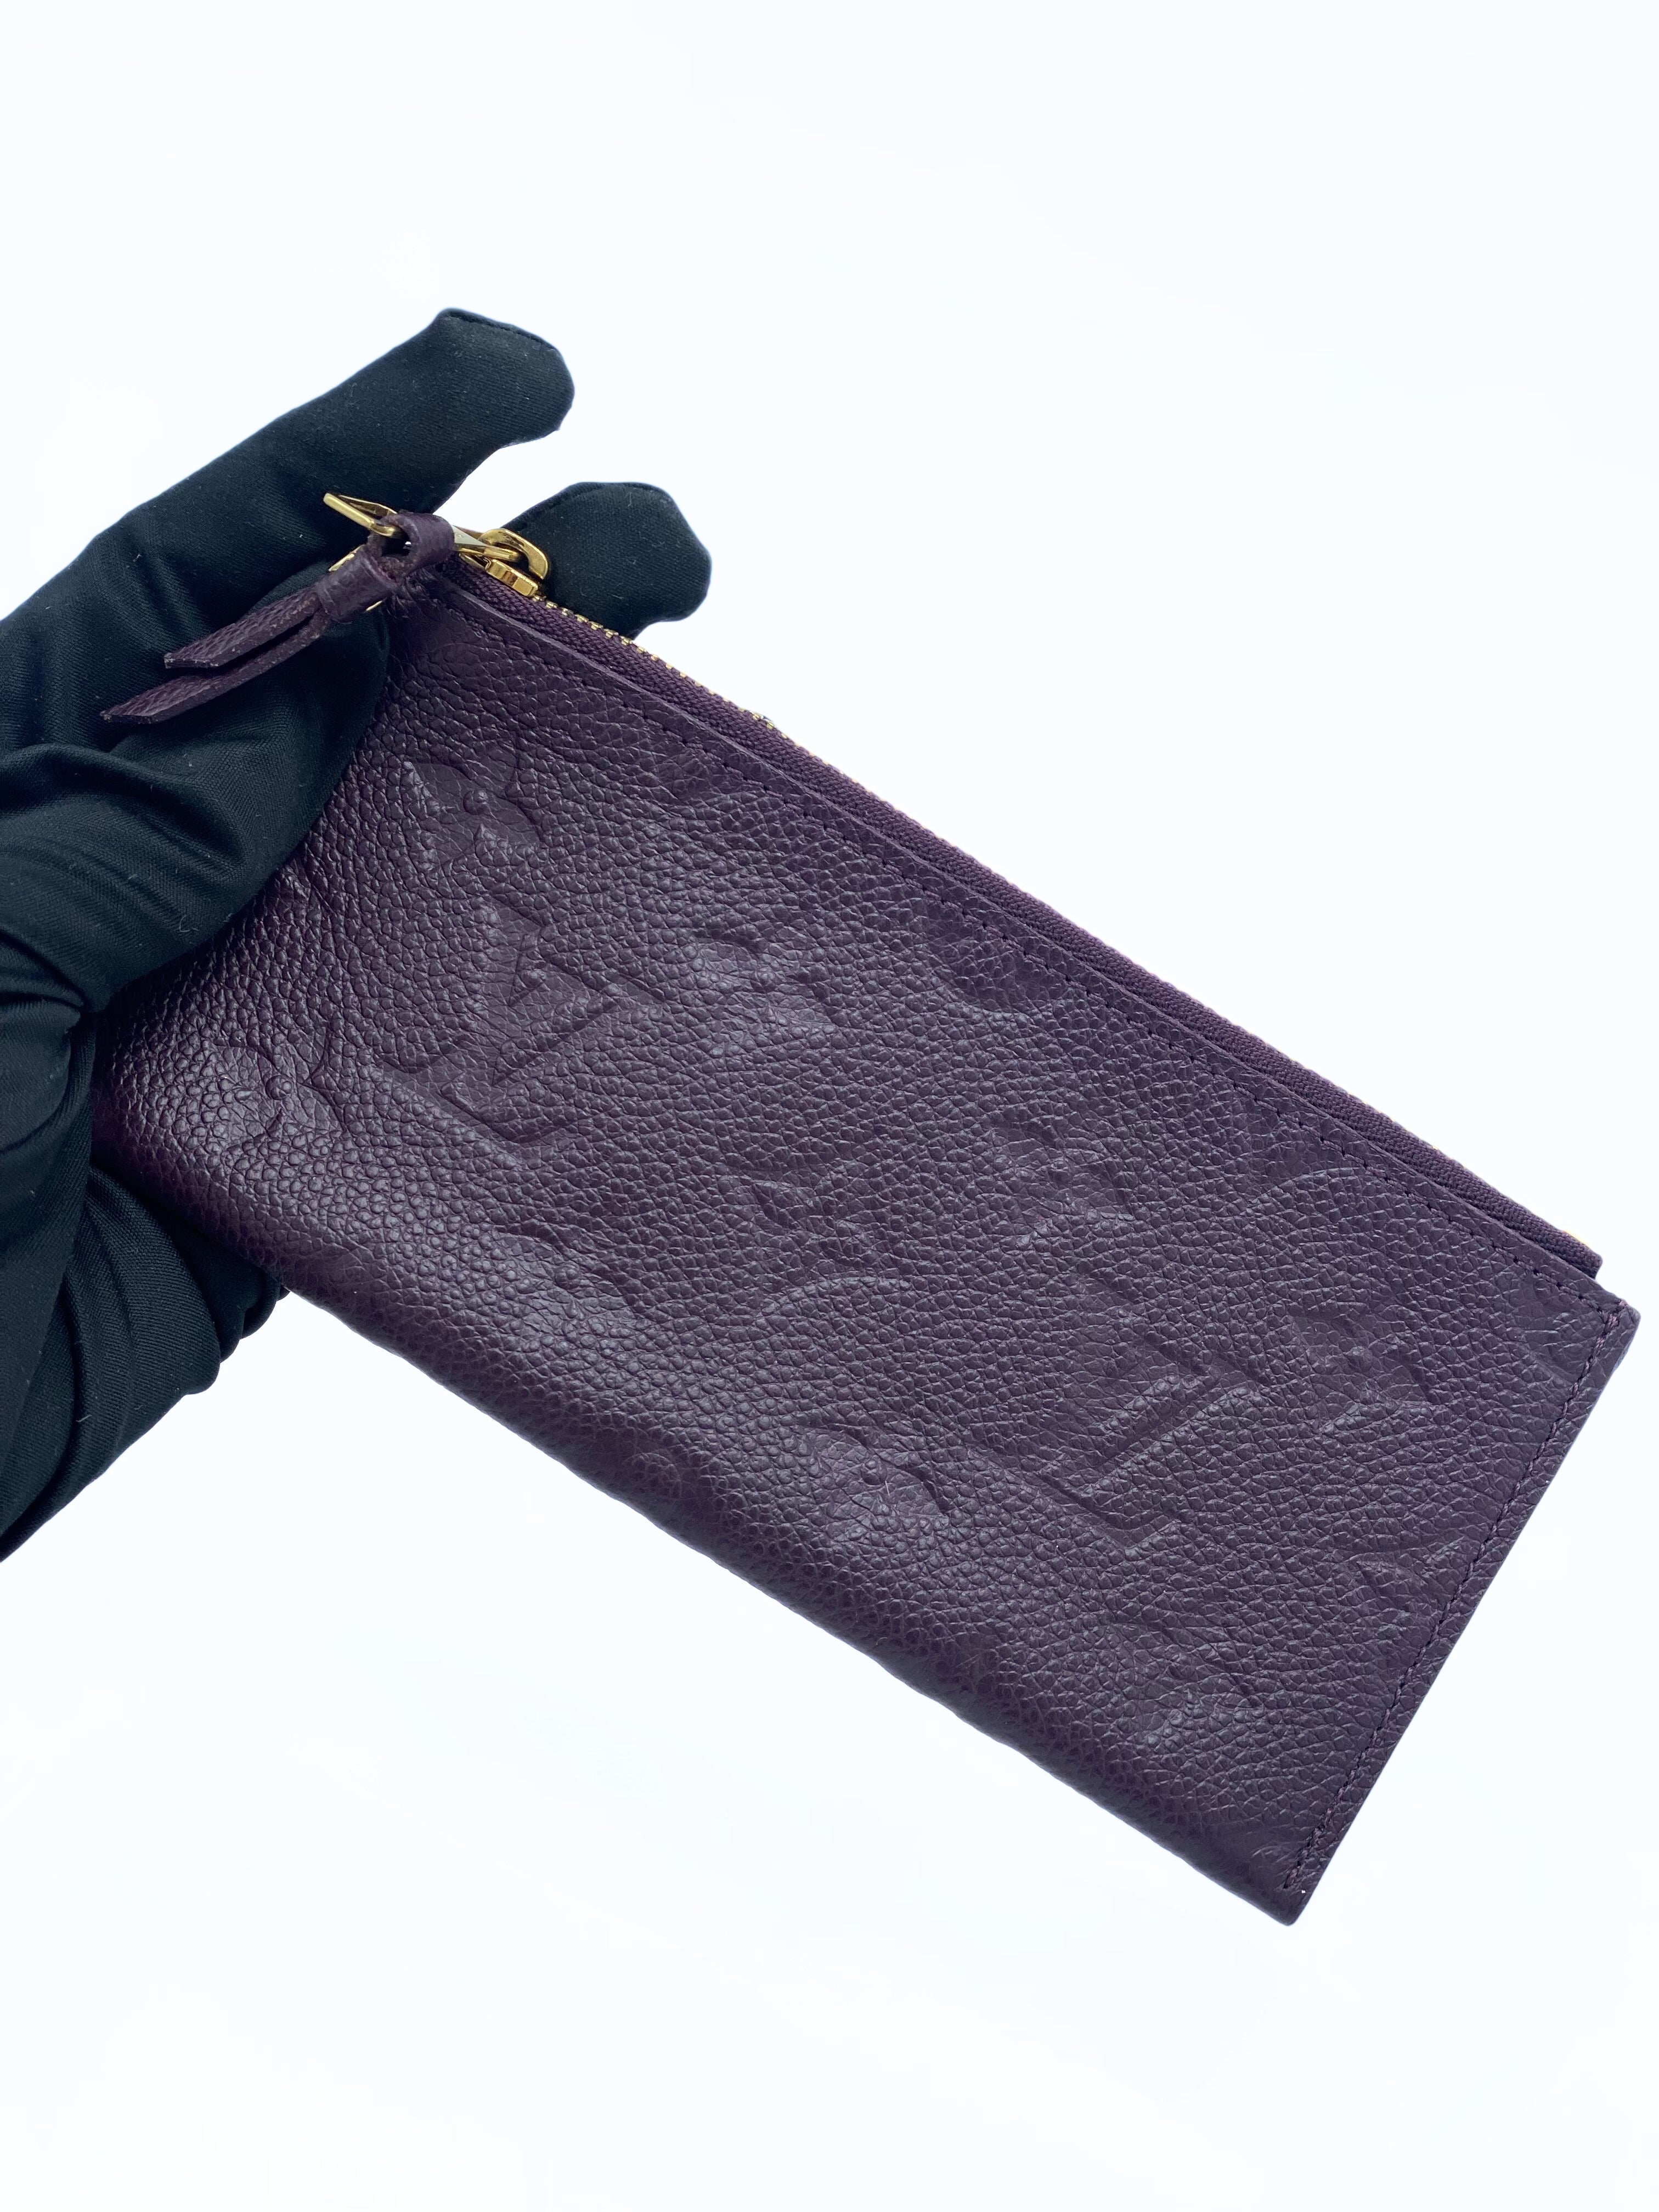 Billetera Louis Vuitton Empreinte Leather